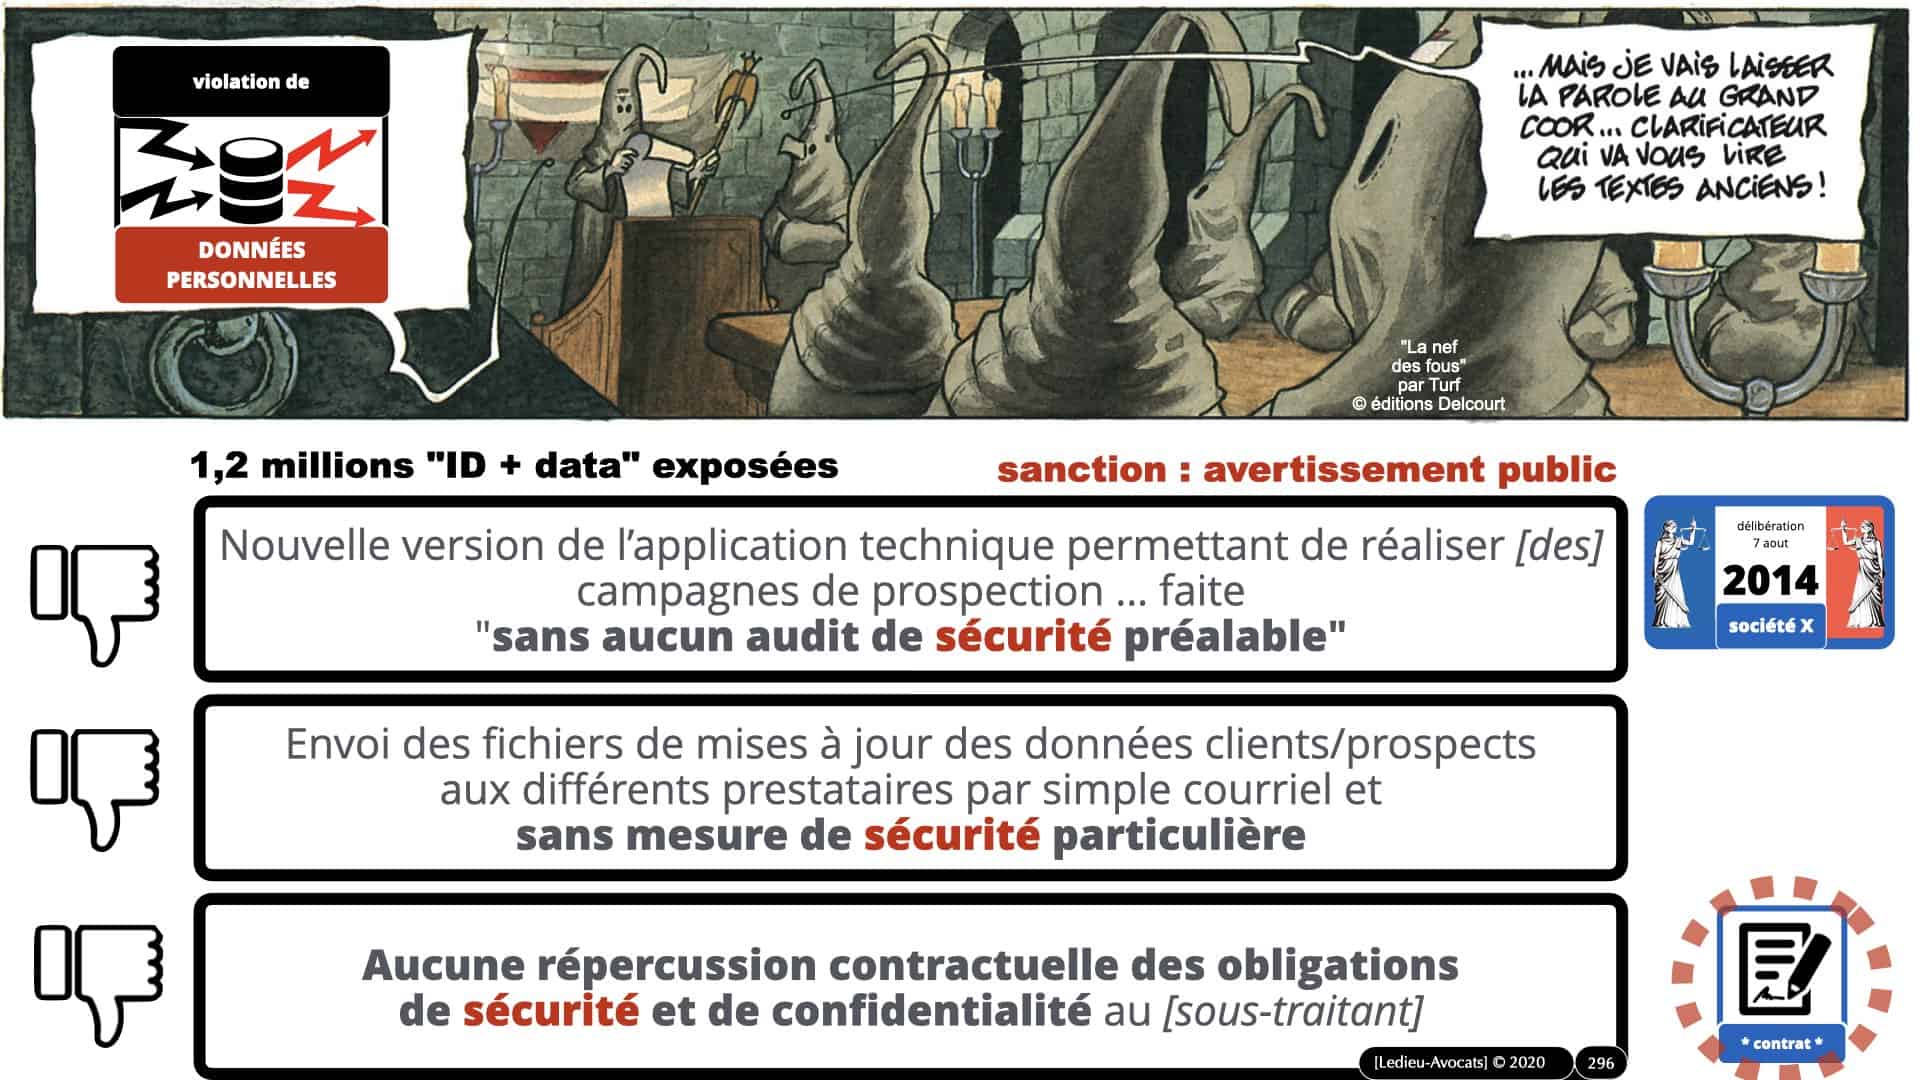 RGPD e-Privacy données personnelles jurisprudence formation Lamy Les Echos 10-02-2021 ©Ledieu-Avocats.296